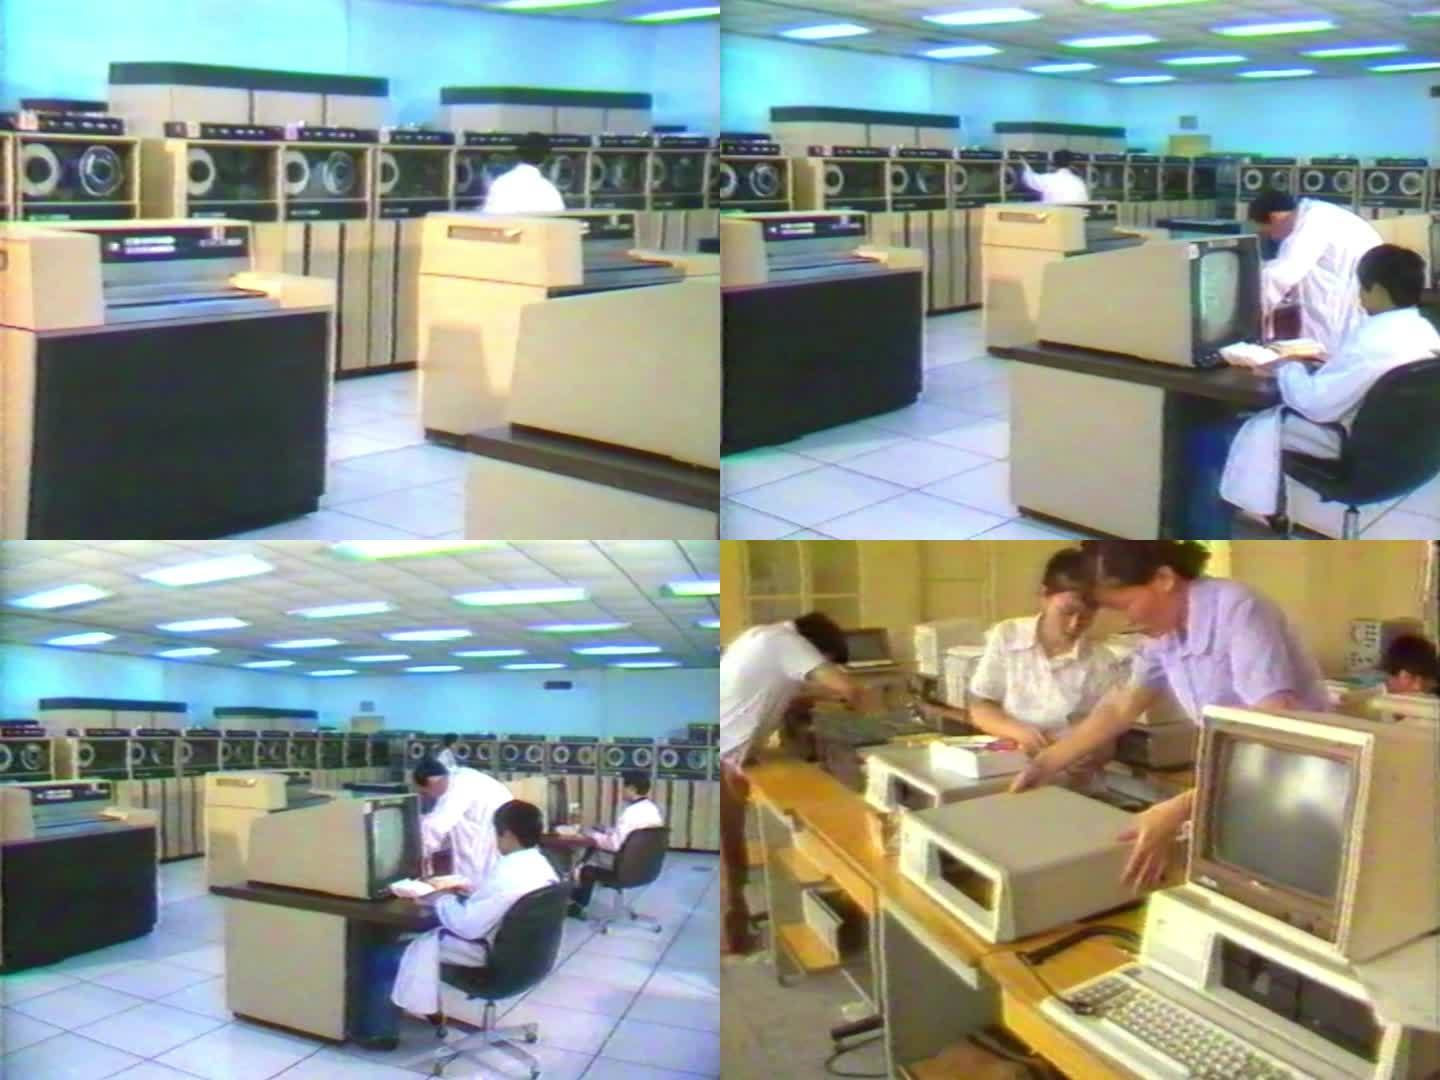 7080年代 信息化 老电脑 改革开放